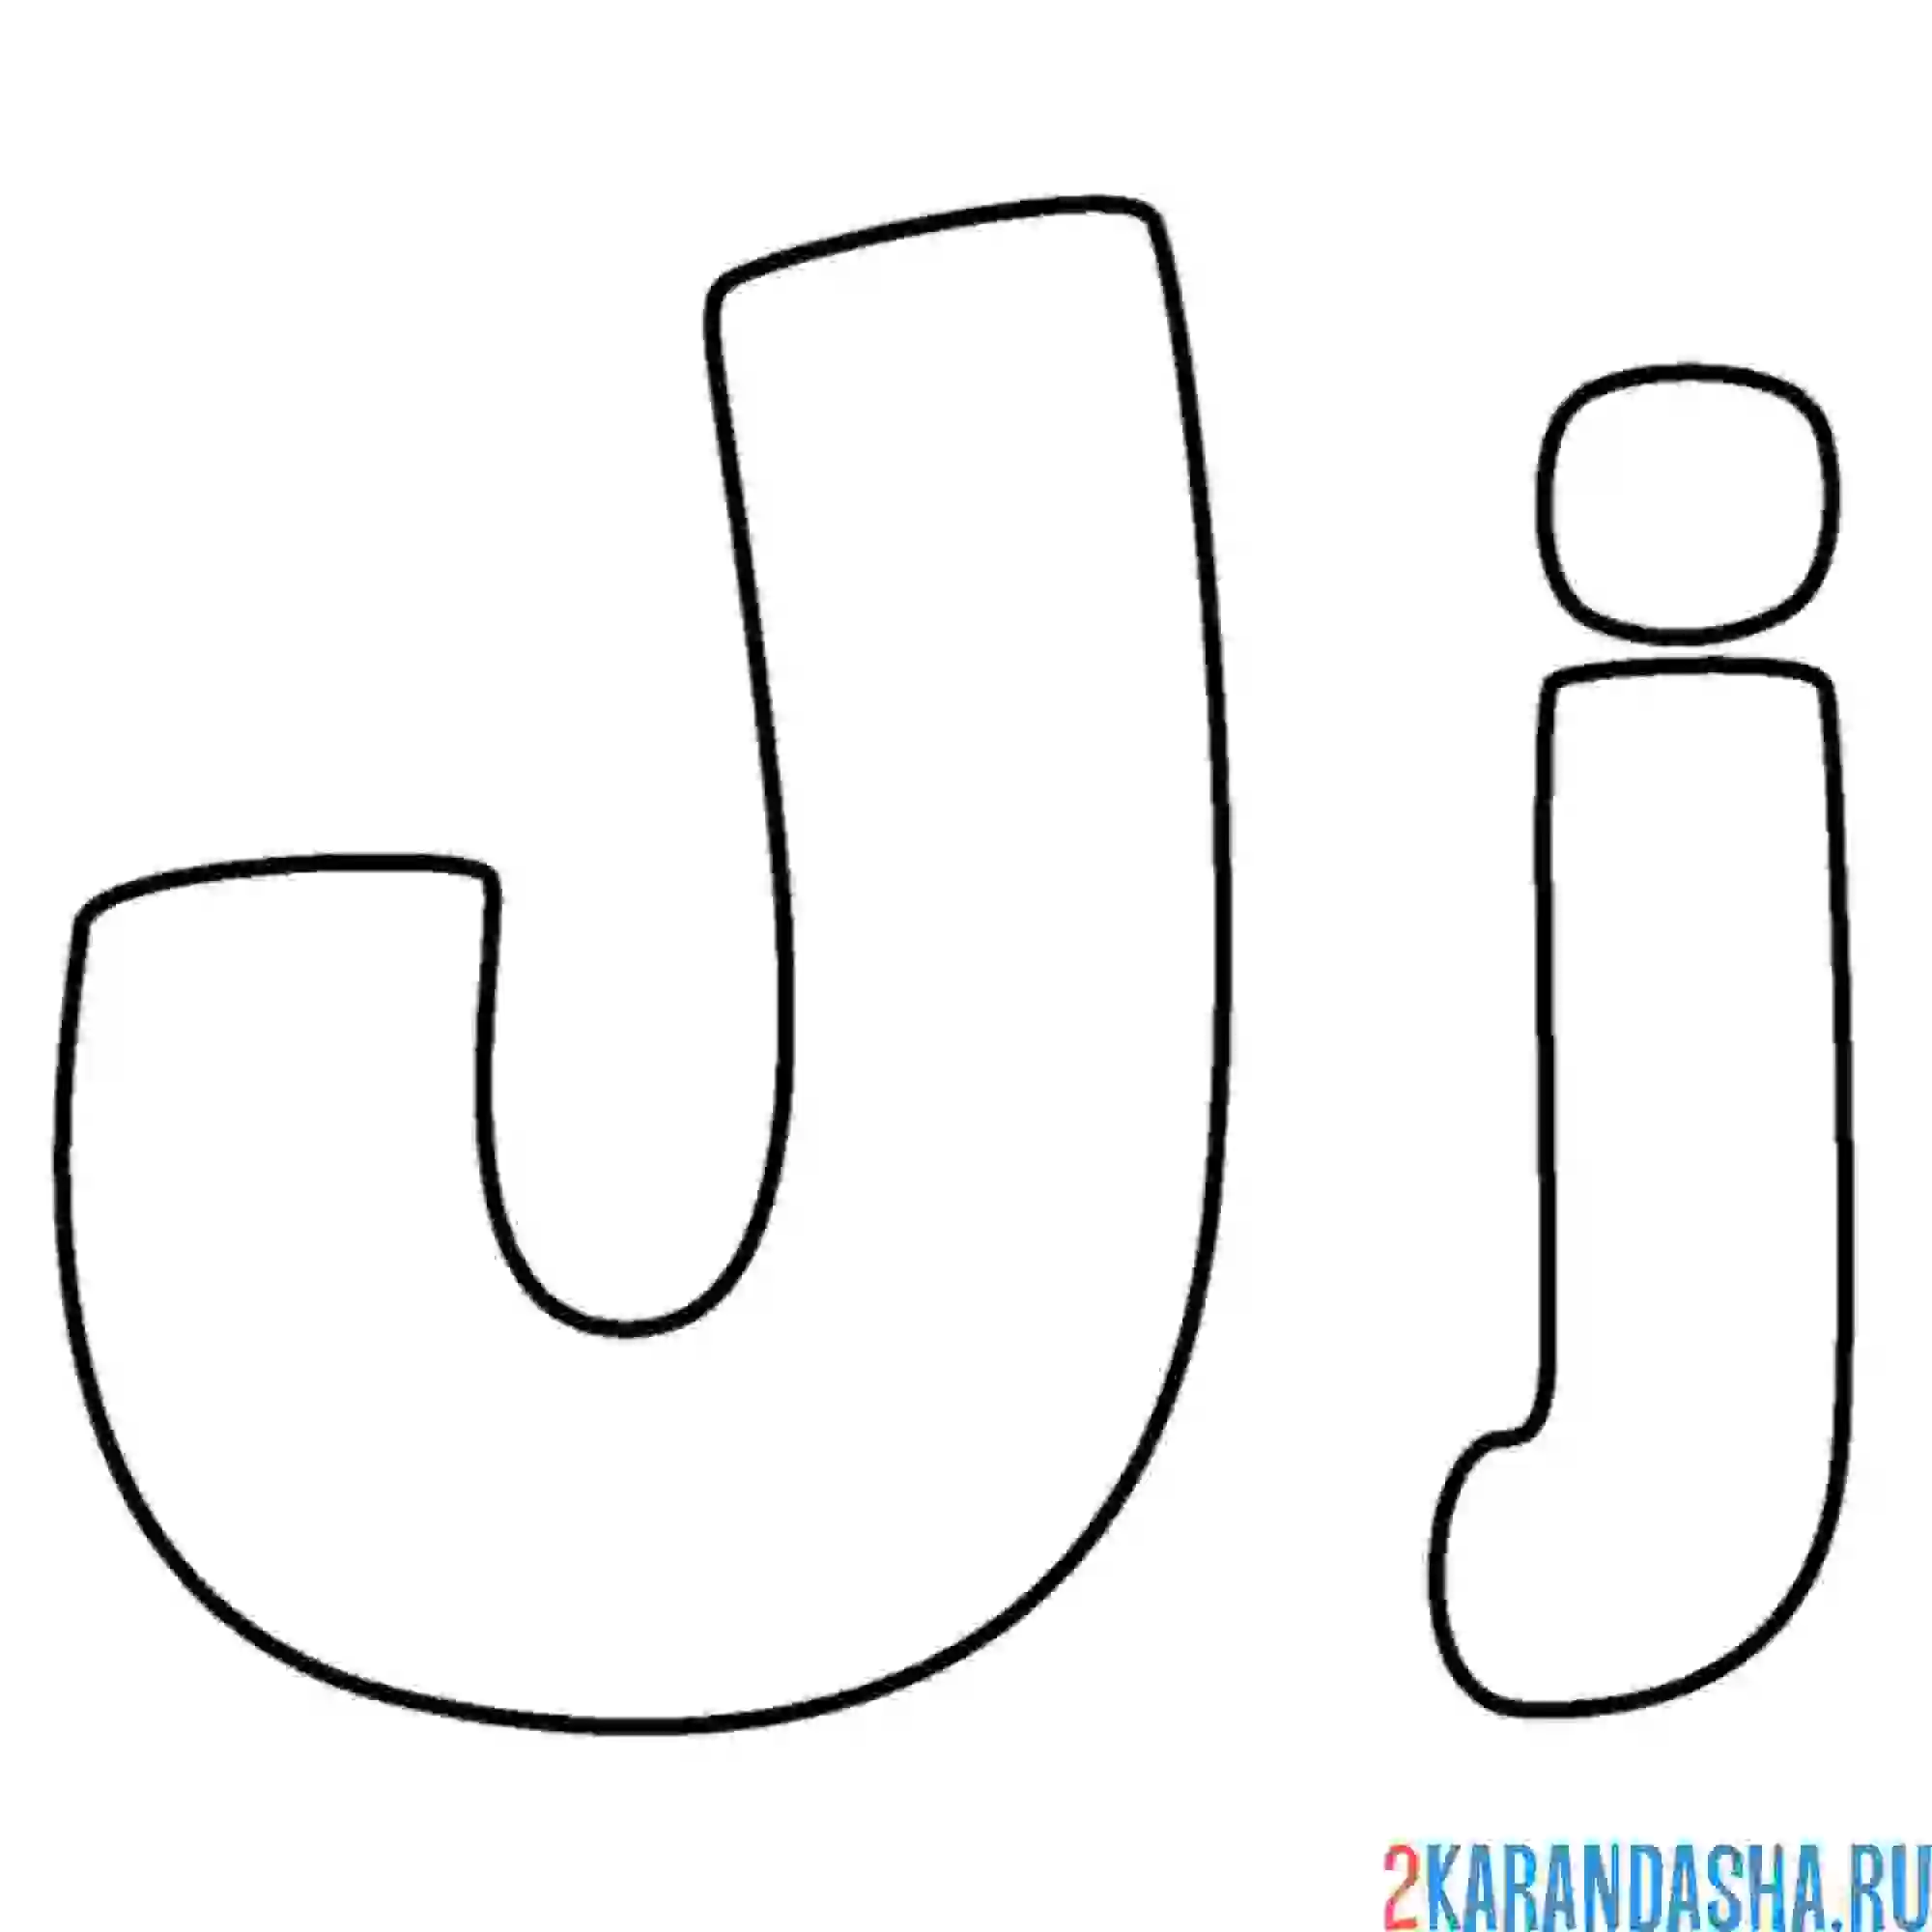 Раскраска буква j английского алфавита